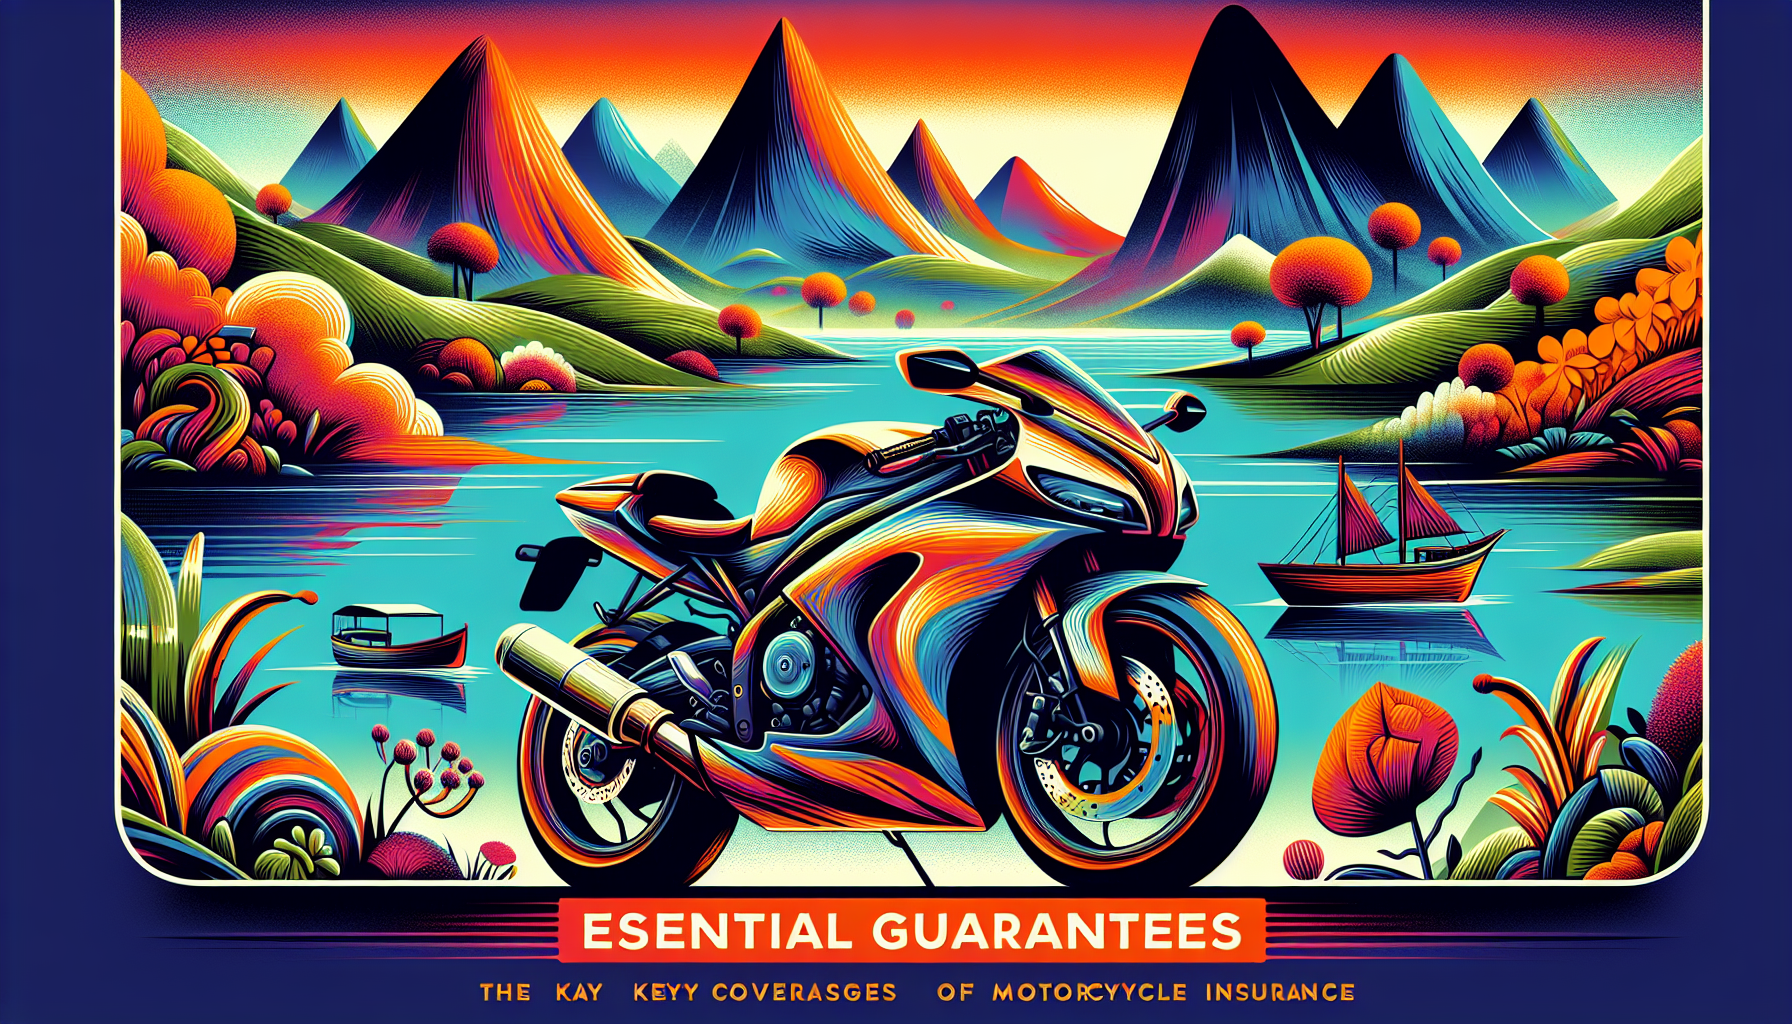 découvrez les garanties indispensables pour une assurance moto à la réunion et choisissez la meilleure protection pour votre moto dans notre guide complet.